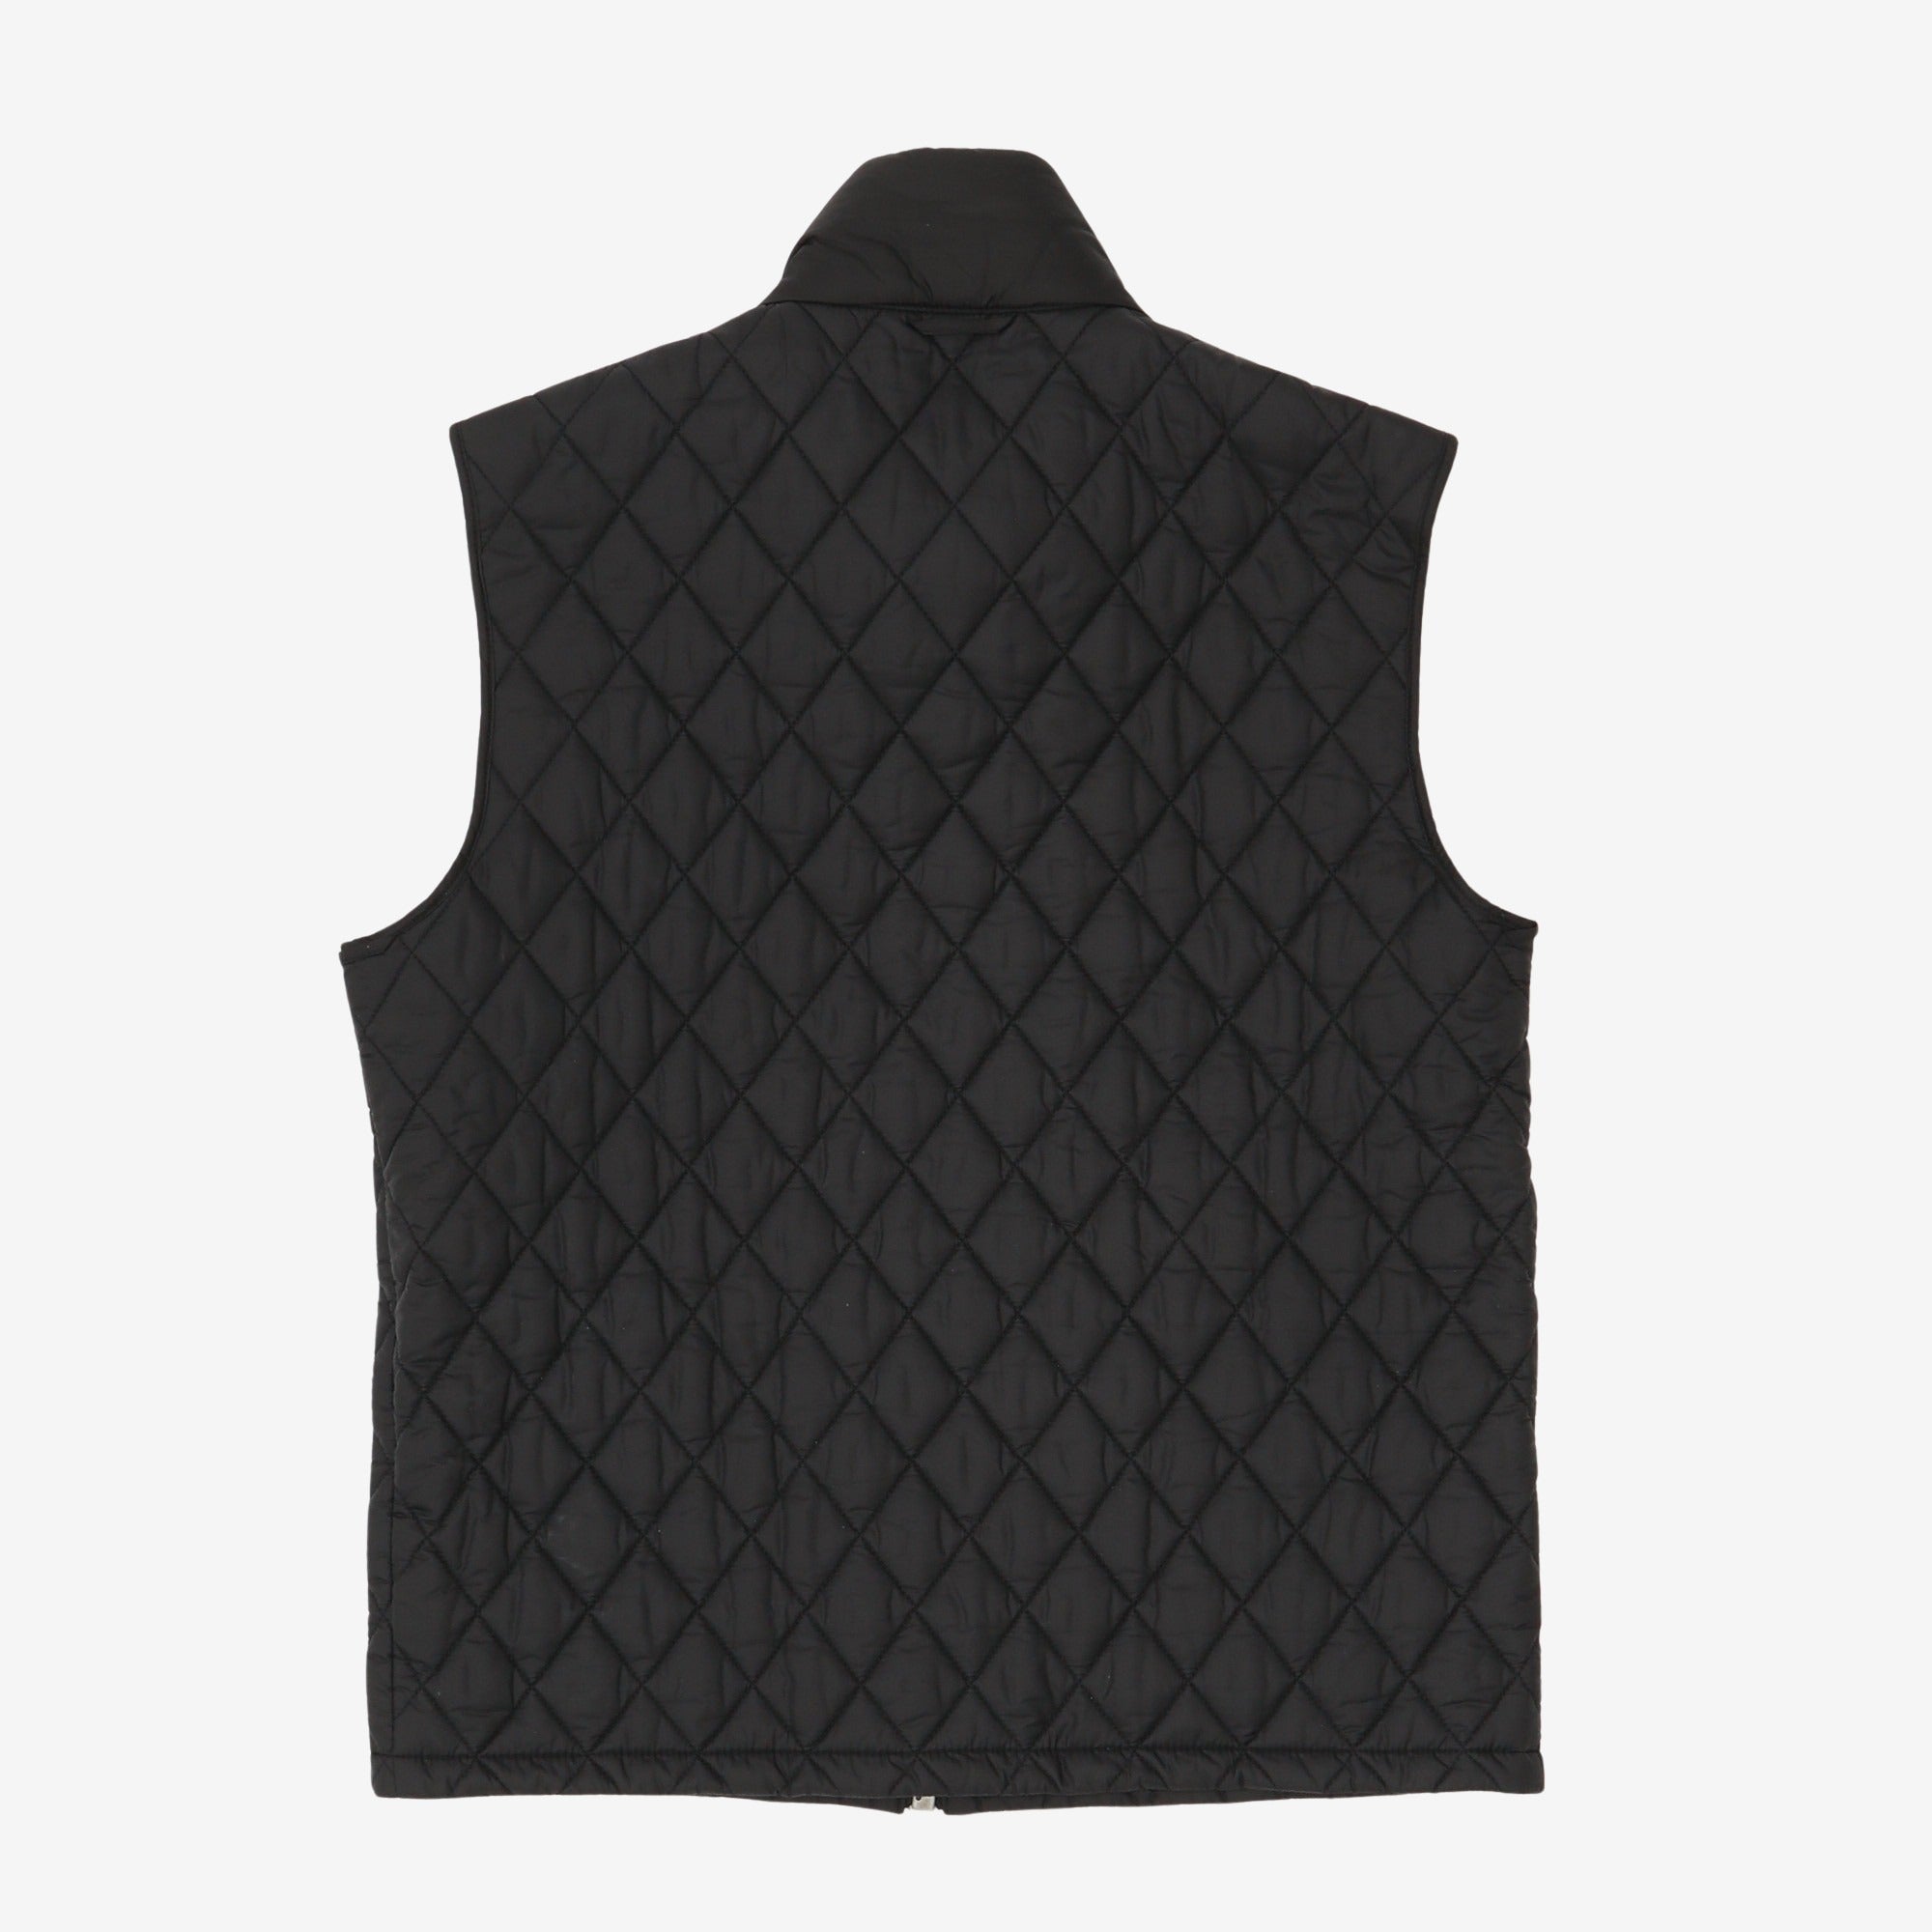 Brit Wool Coat + Detachable Liner vest